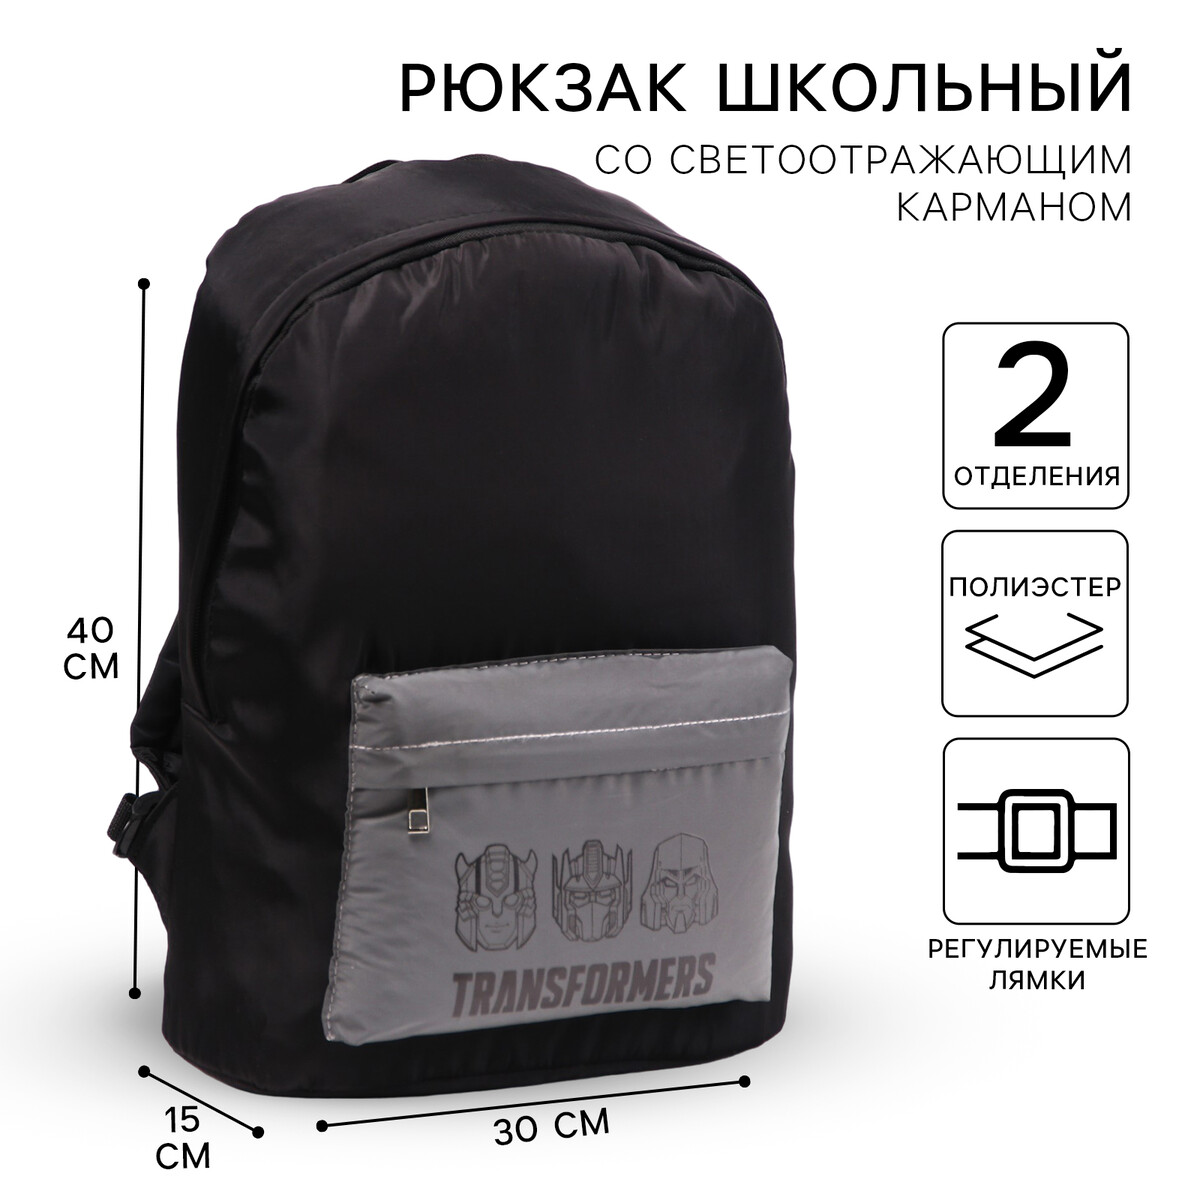 Рюкзак со светоотражающим карманом, 30 см х 15 см х 40 см Hasbro